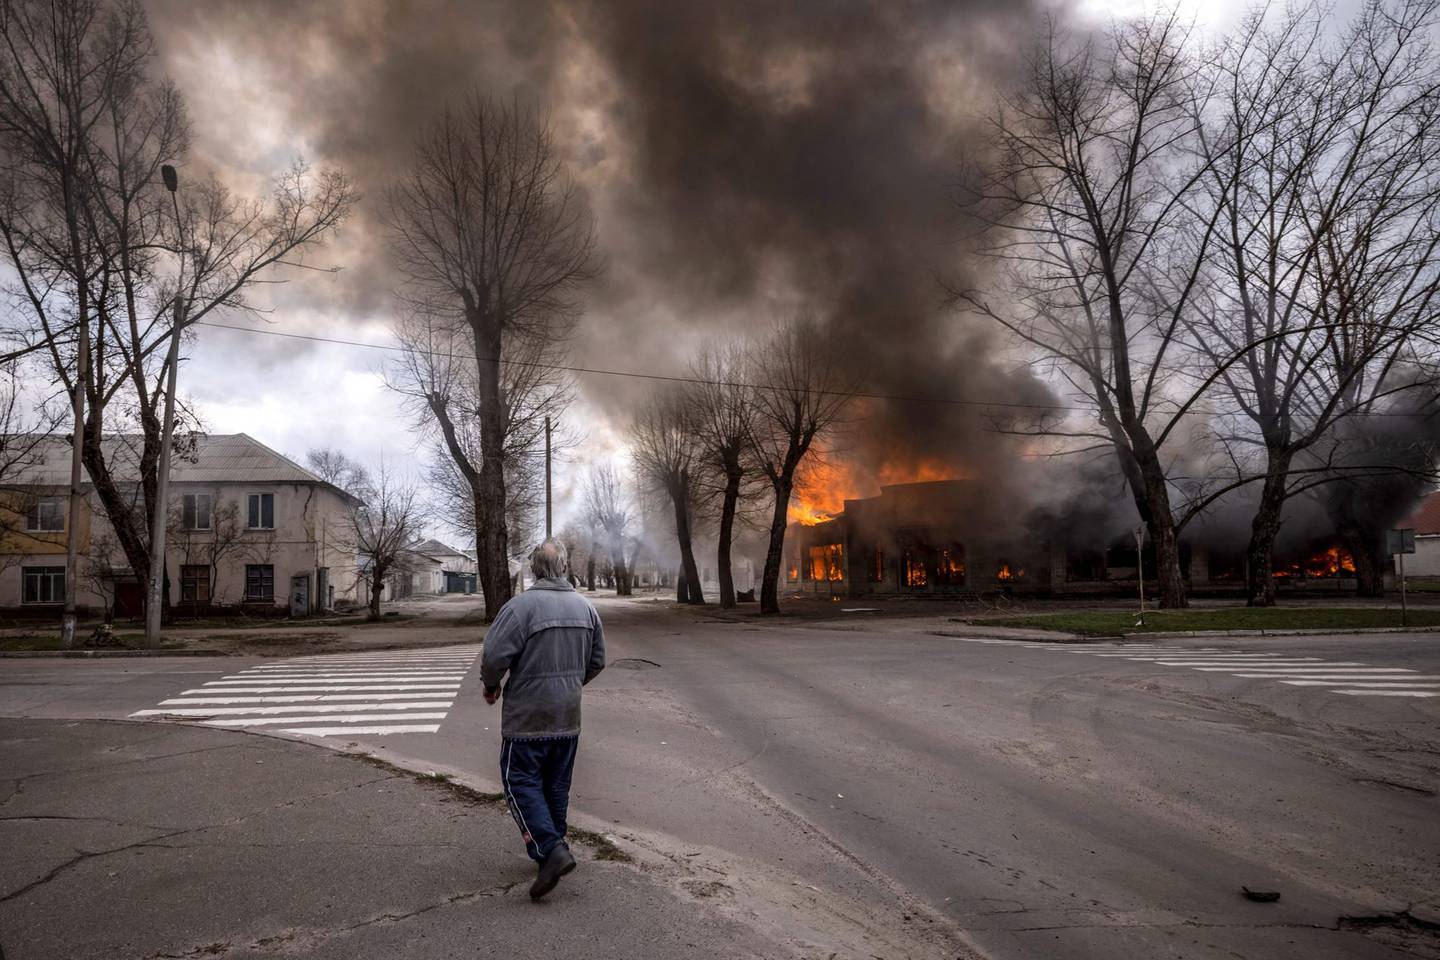 Un hombre camina por una acera mientras una casa arde tras un bombardeo Severodonetsk, región de Donbass, el 6 de abril de 2022 Fotógrafo: Fadel Senna/AFP/Getty Images